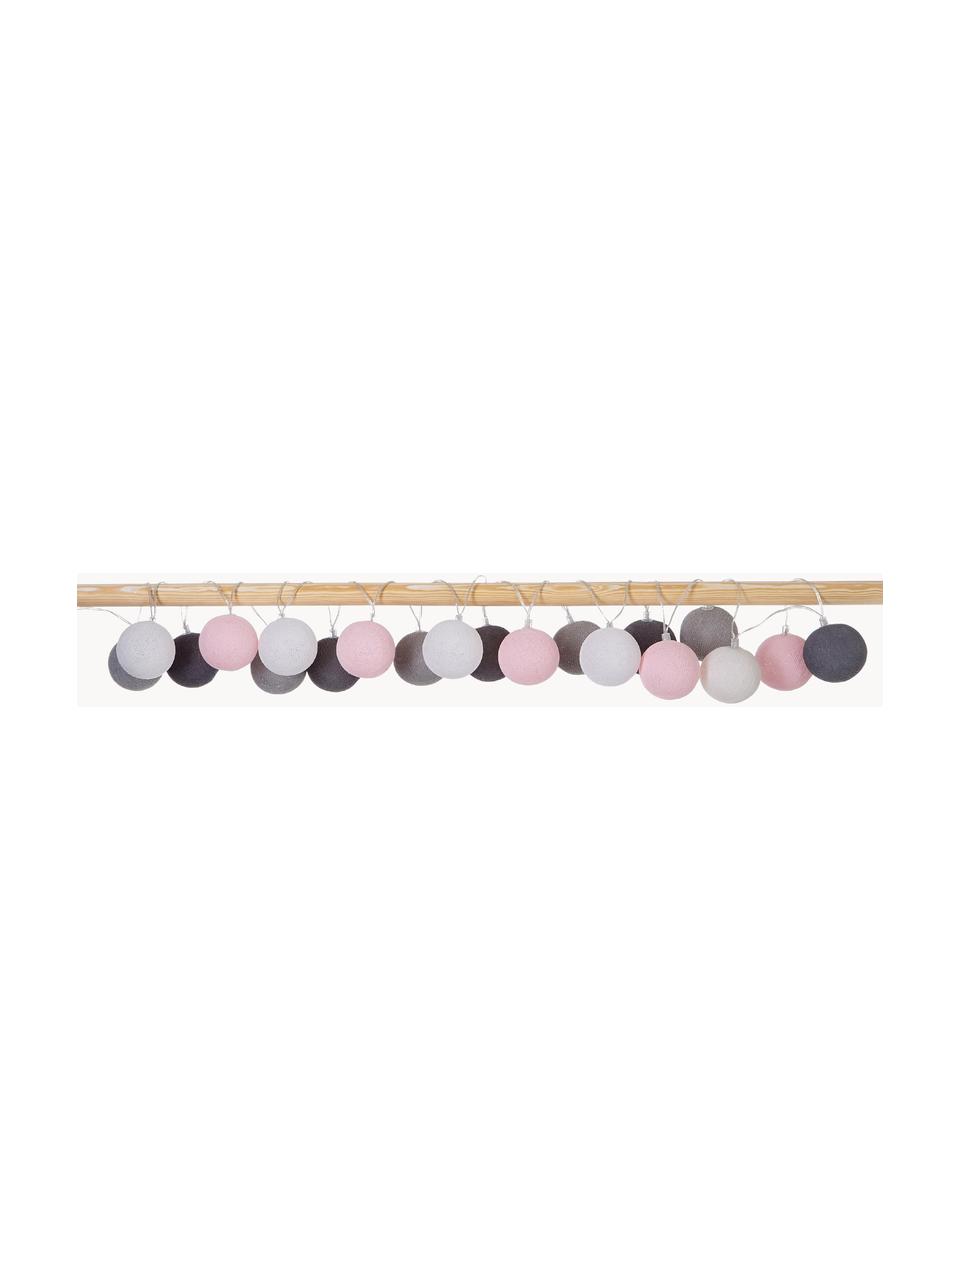 Girlanda świetlna LED Colorain, Blady różowy, odcienie szarego, D 378 cm